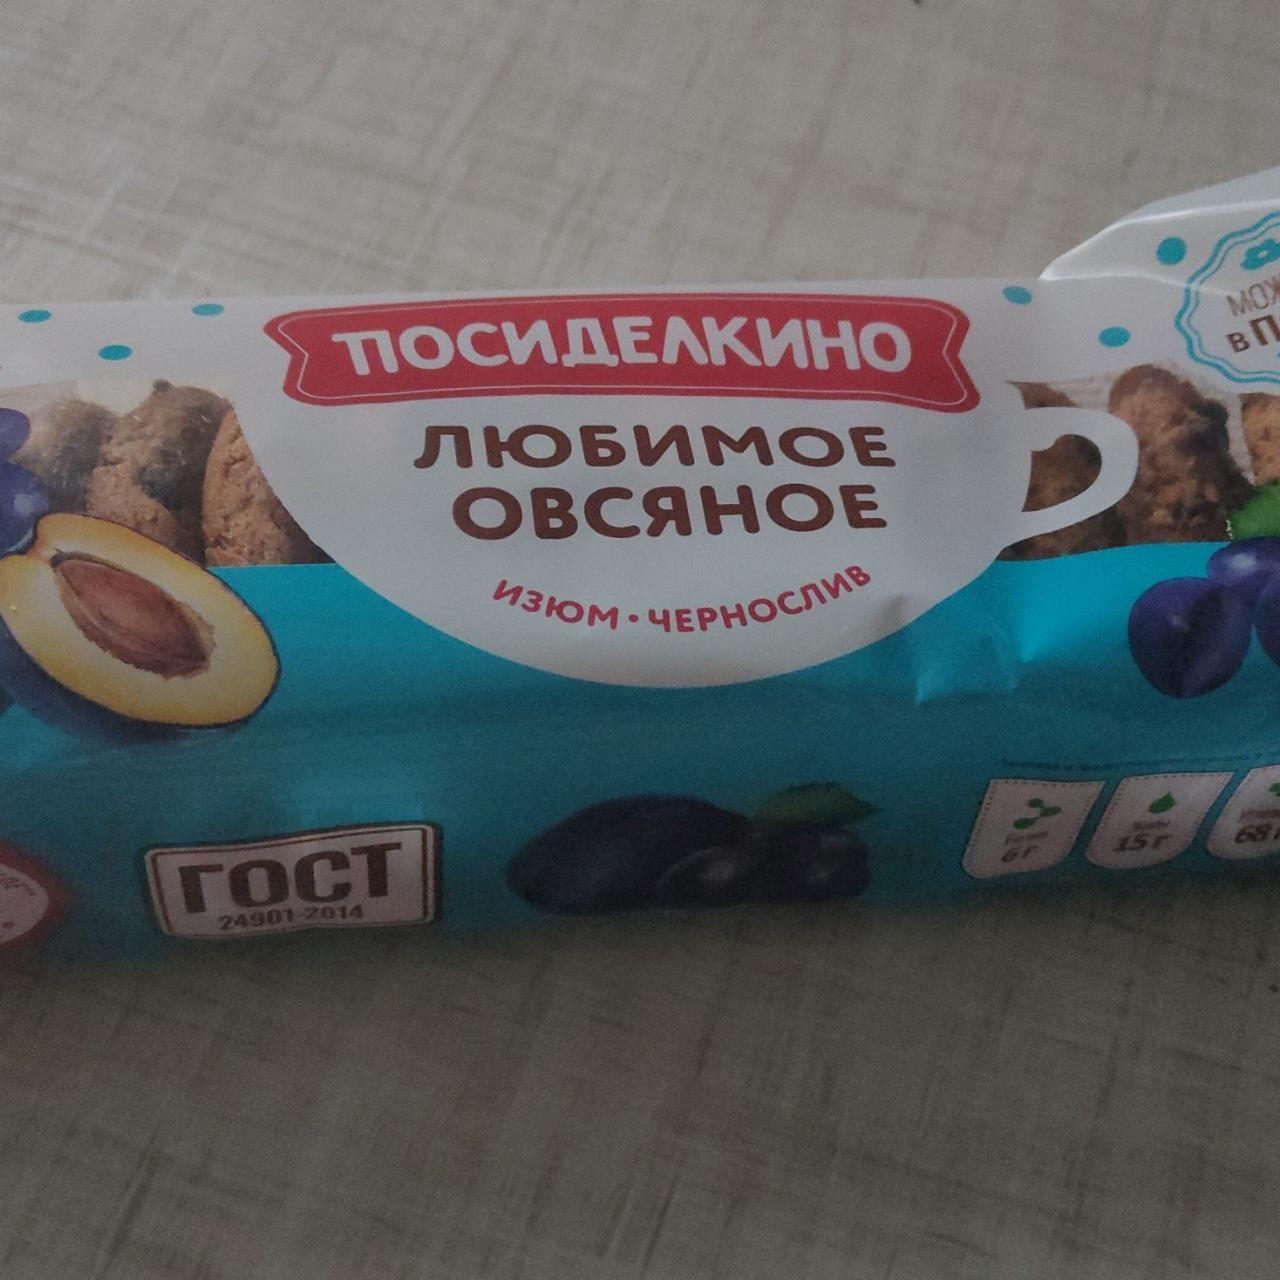 Фото - Печенье овсяное с изюмом и черносливом Посиделкино